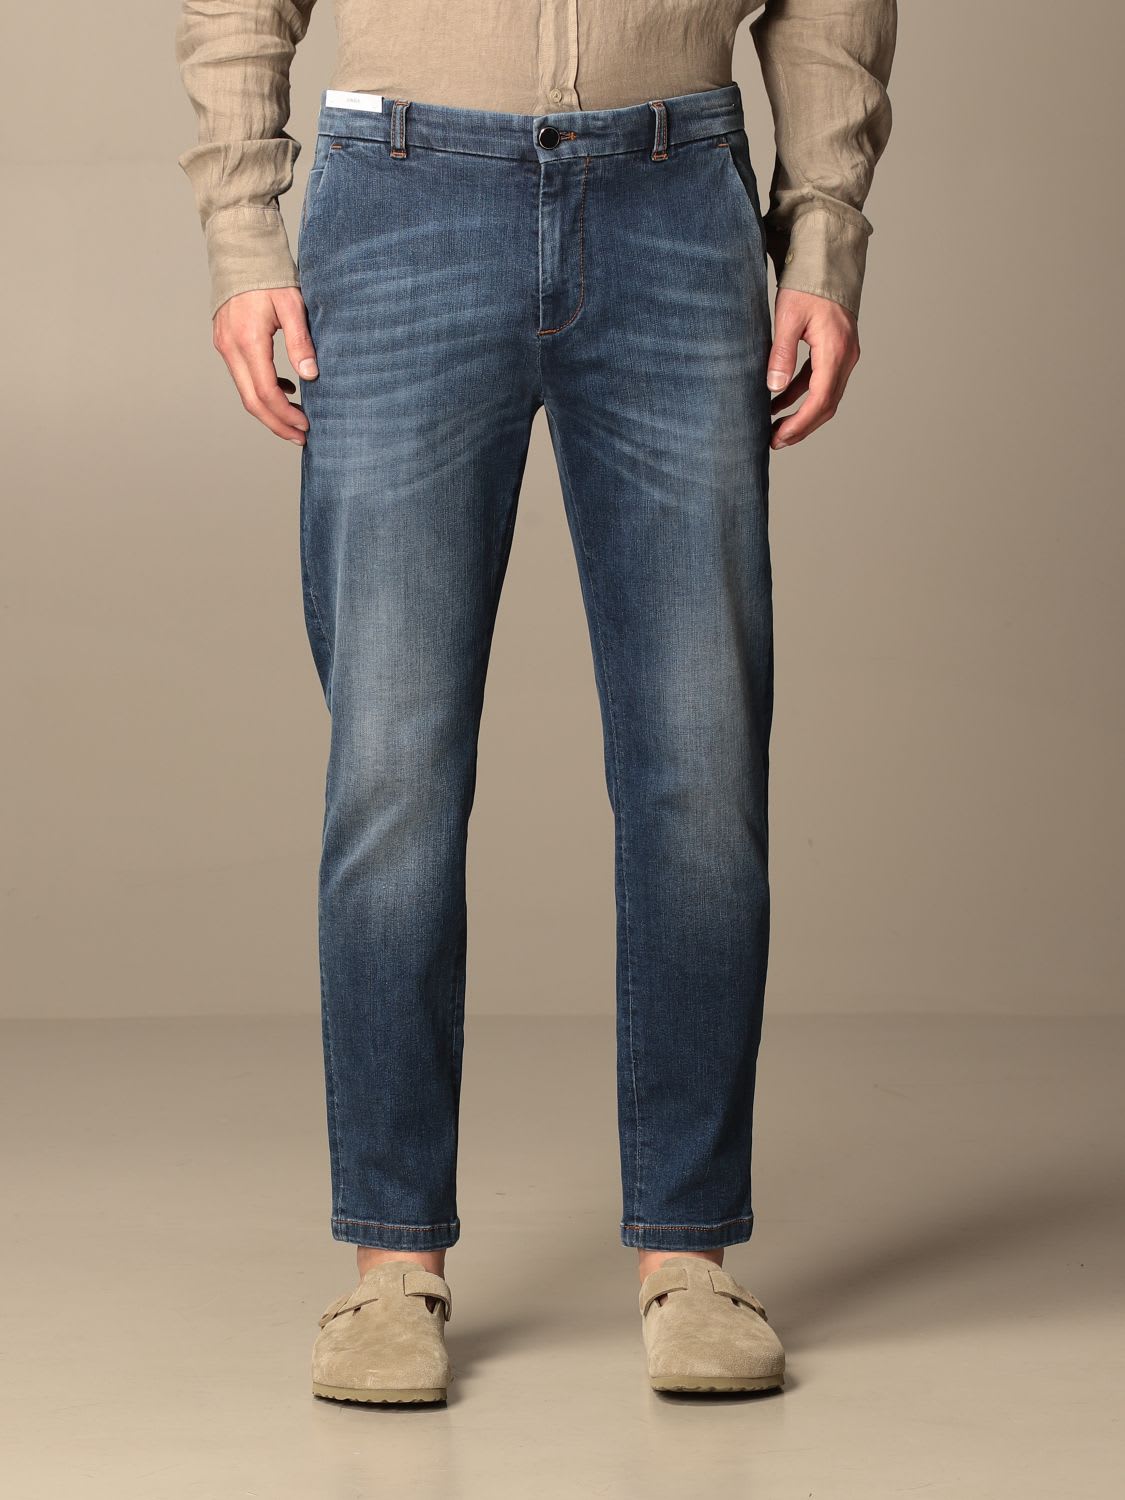 PT01 Pt Jeans Pt05 Denim Jeans With Superslim America Pockets